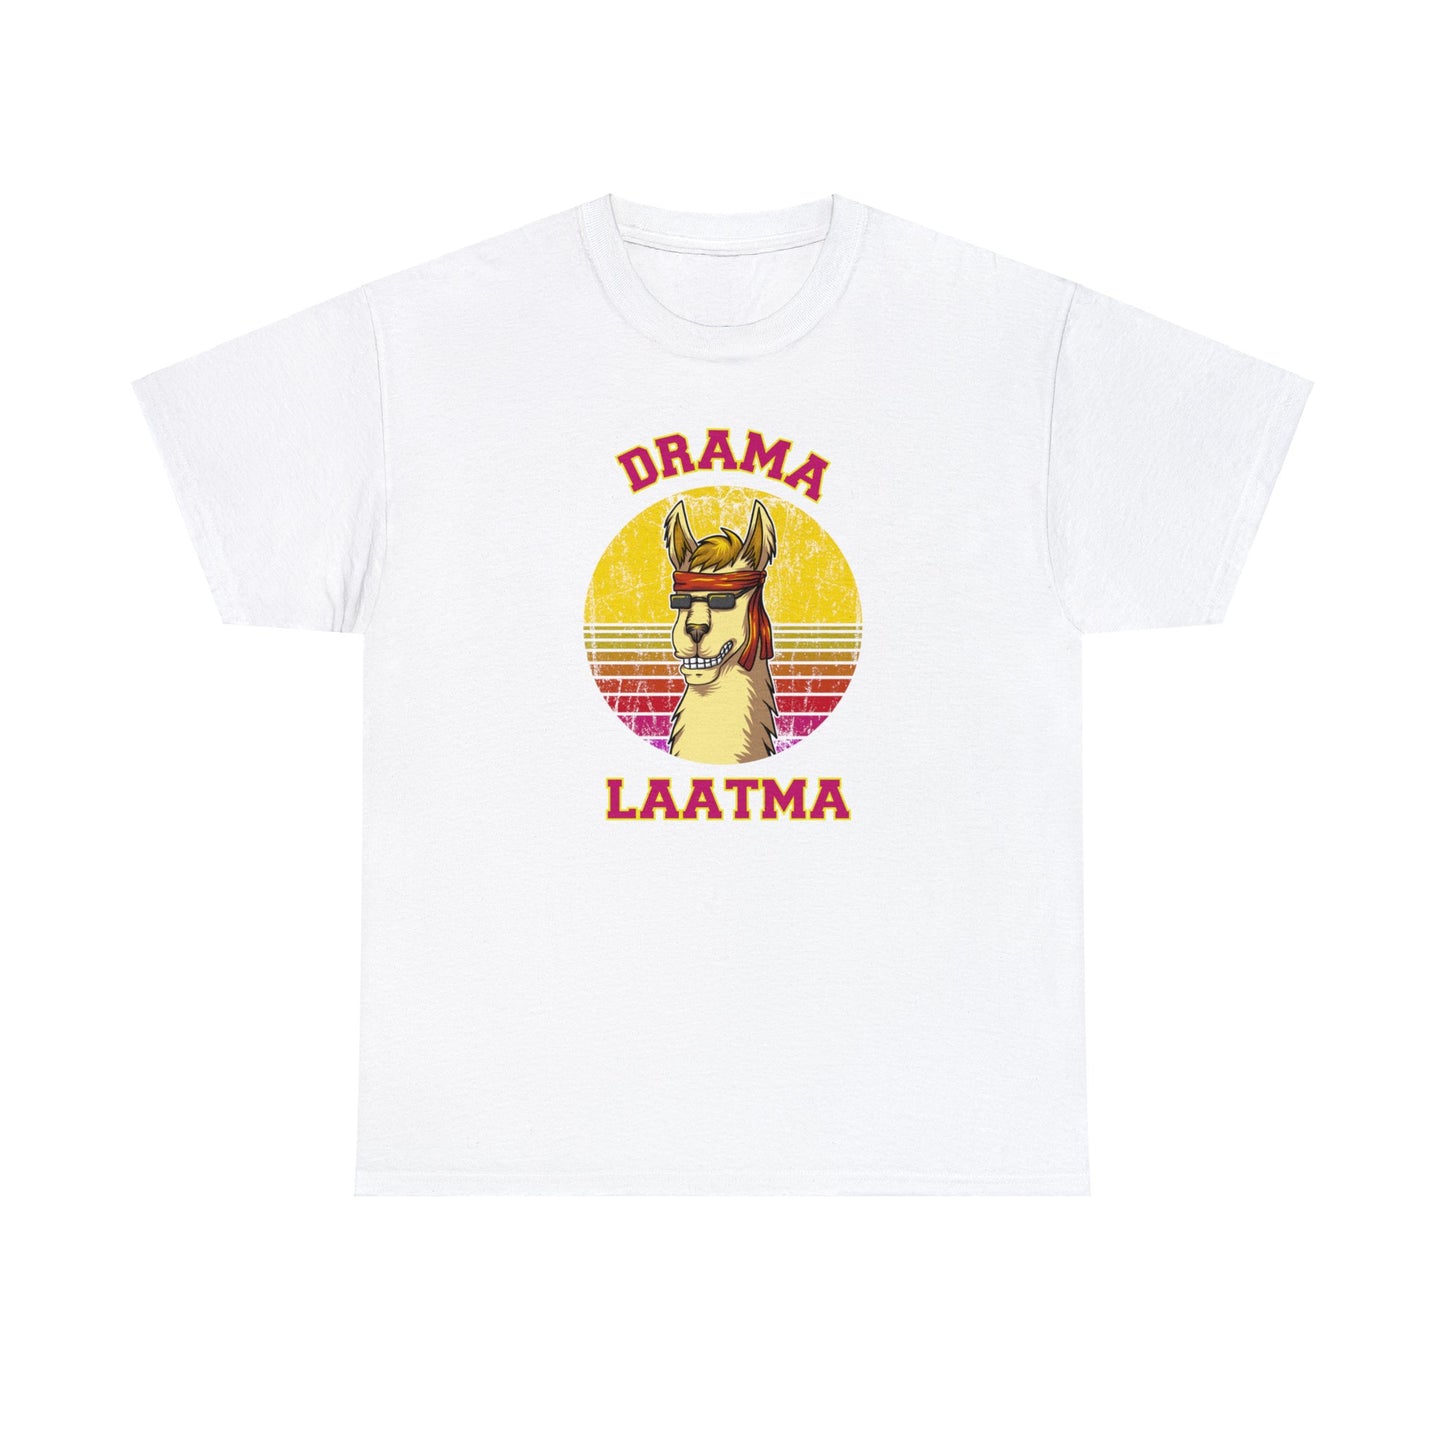 Drama Laatma Concept Tshirt